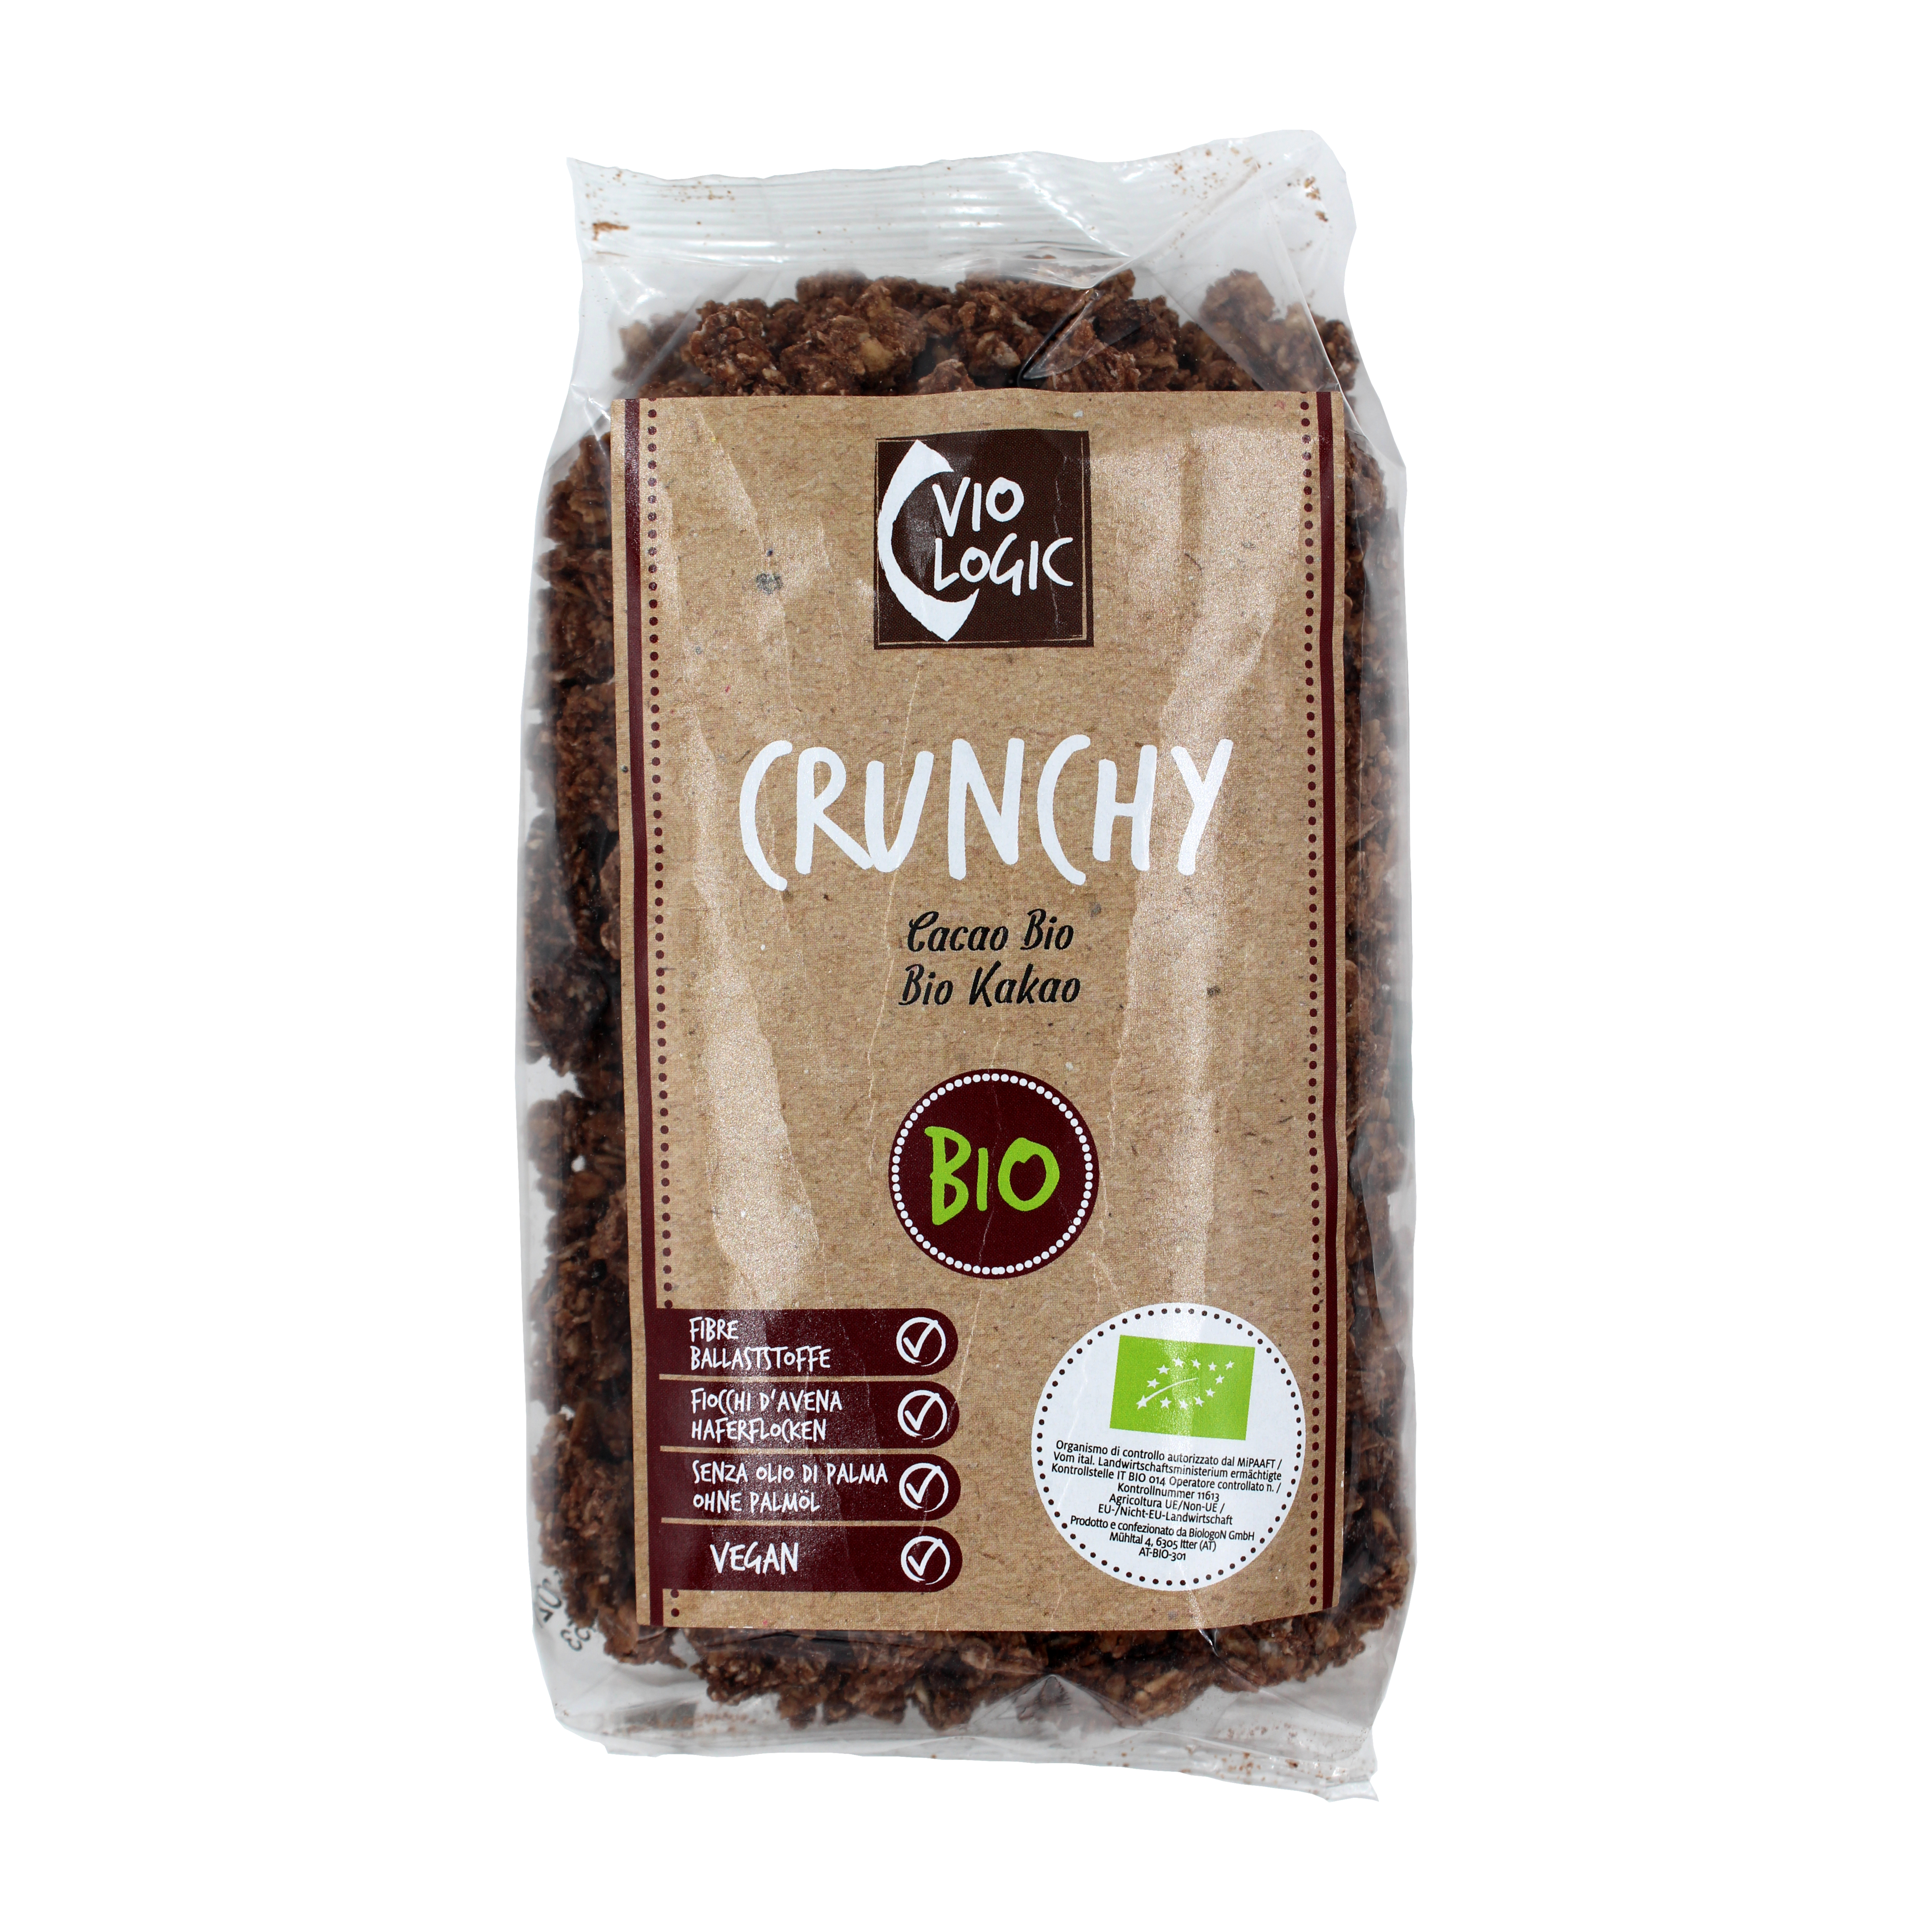 Crunchy caccao bio 375g